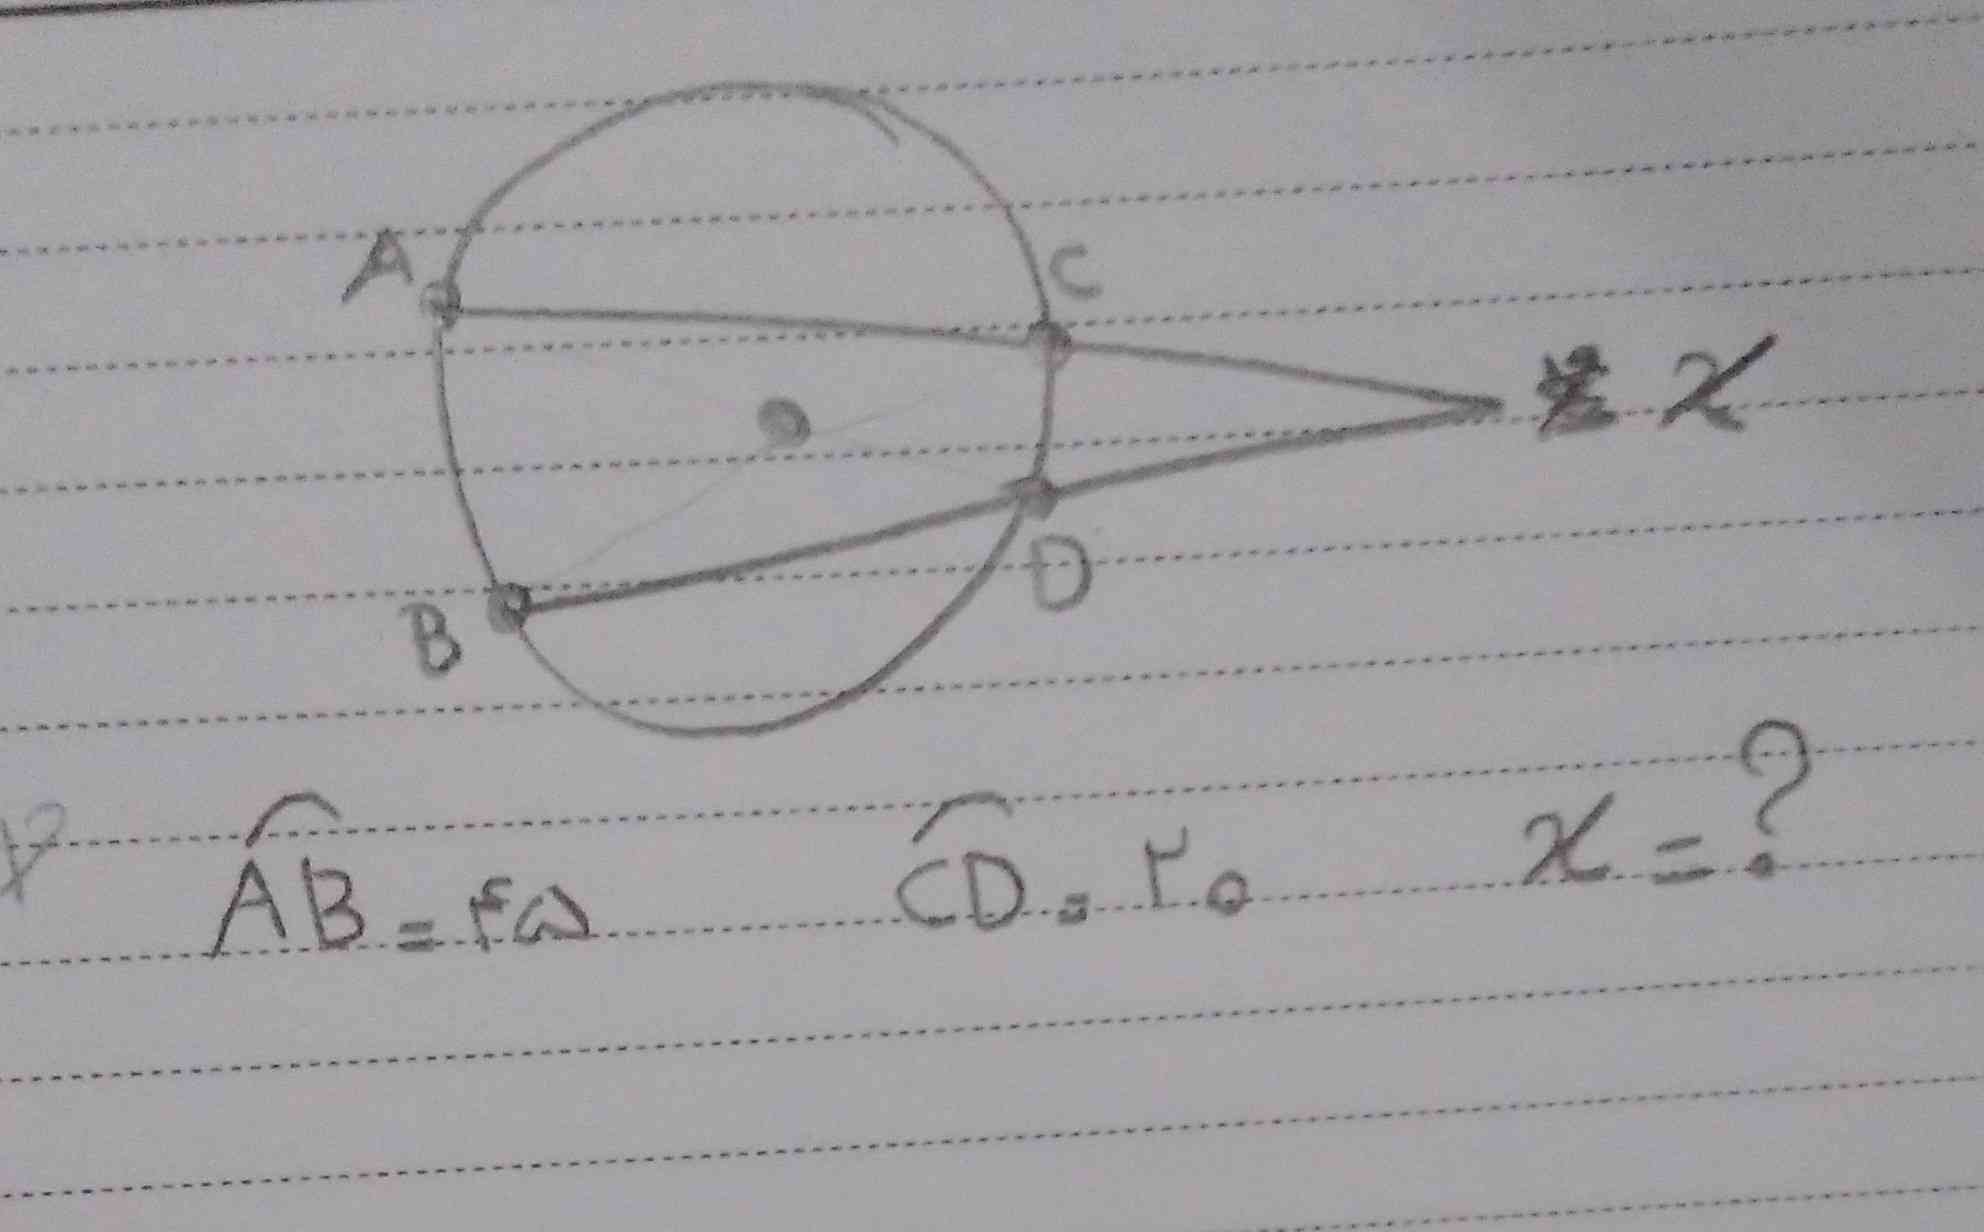 بچه ها این یه فرمول داشت که این بر روی اون و تقسیم بر یچیزی میشد زاویه X
اگه یادتون مونده بهم بگین
به جوابای درست تاج میدم